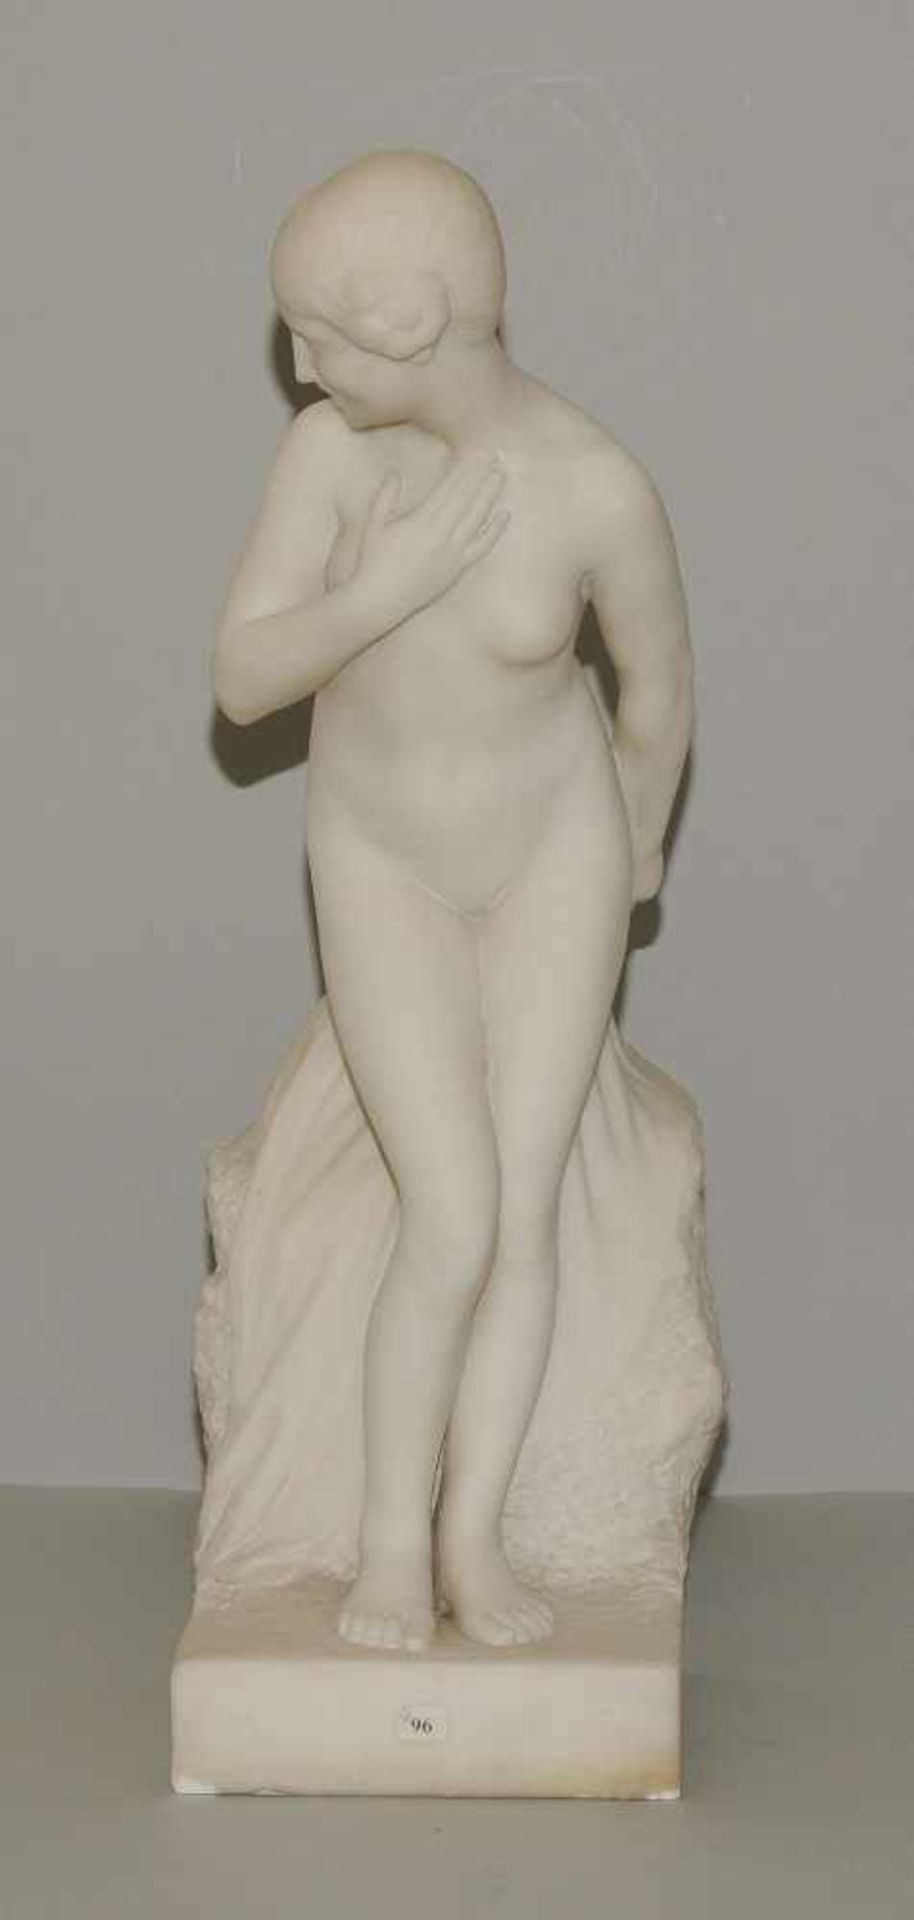 Mädchenakt, E. Molineau Um 1900. Mädchenakt. Weisser Marmor. Bezeichnet: E. Molineau. H 74 cm. - Bild 2 aus 9